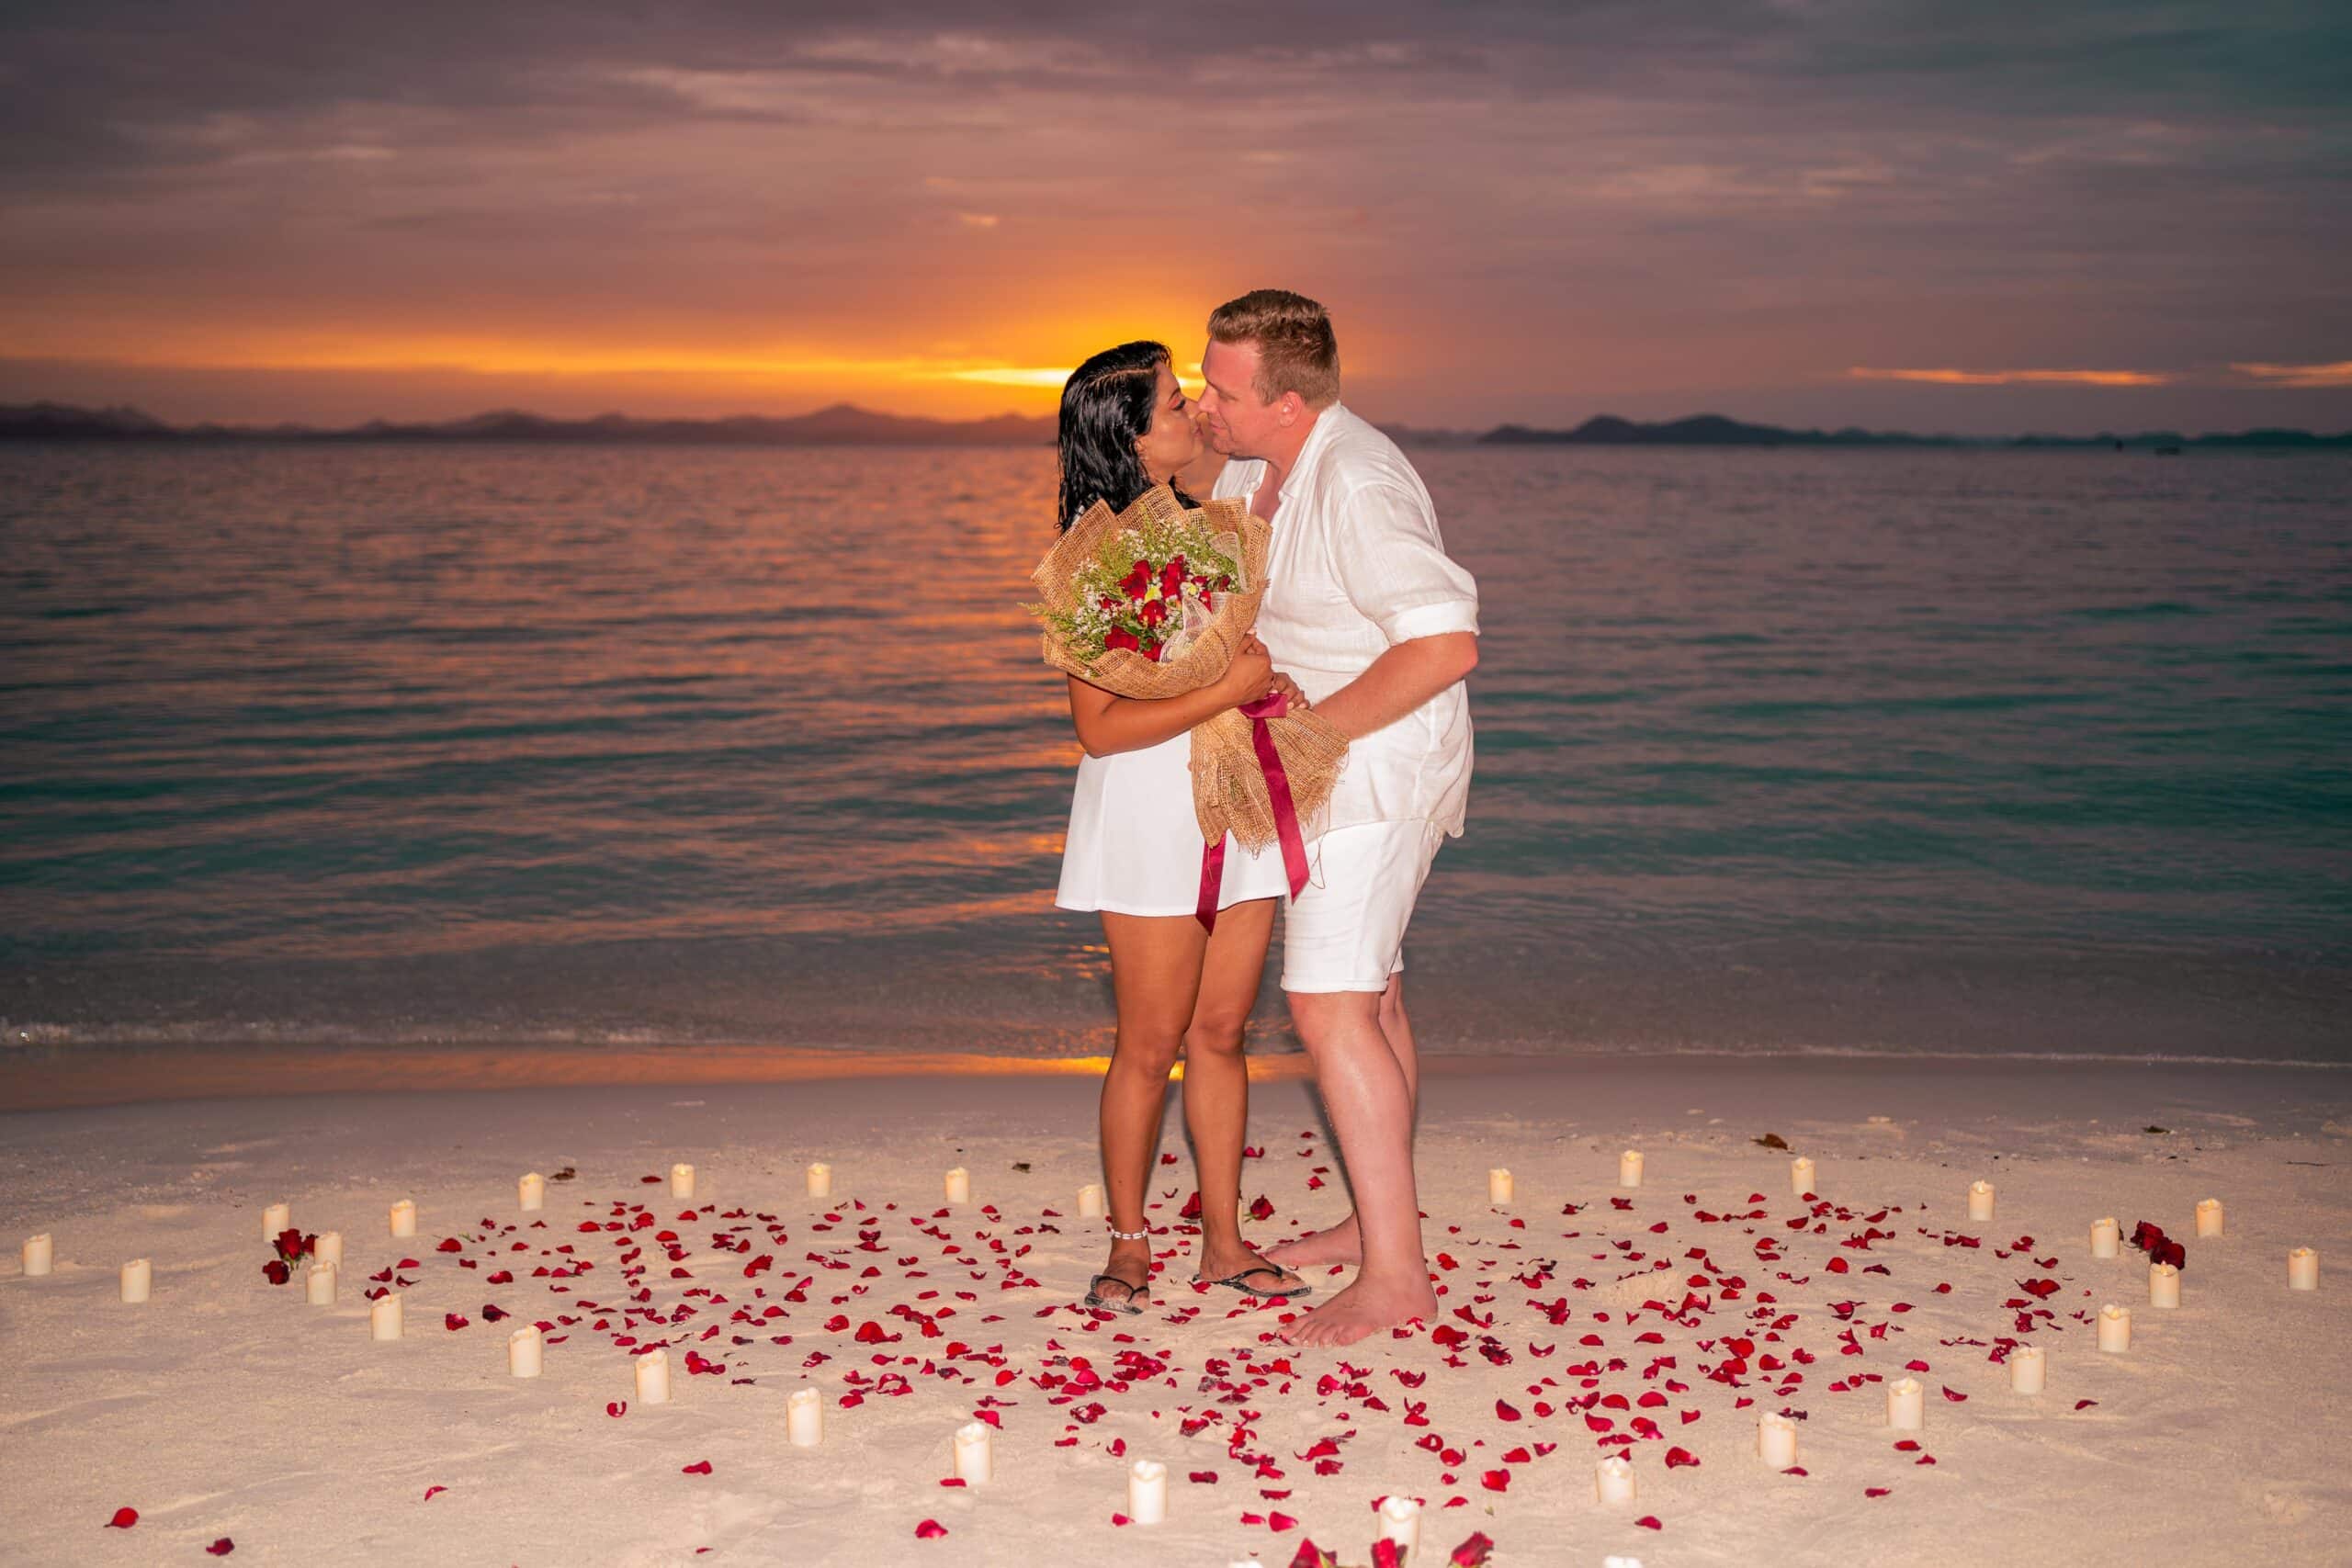 Sunset-romantic-candle-rose-petals-coron-wedding-proposal-El-nido-Palawan-private-tour